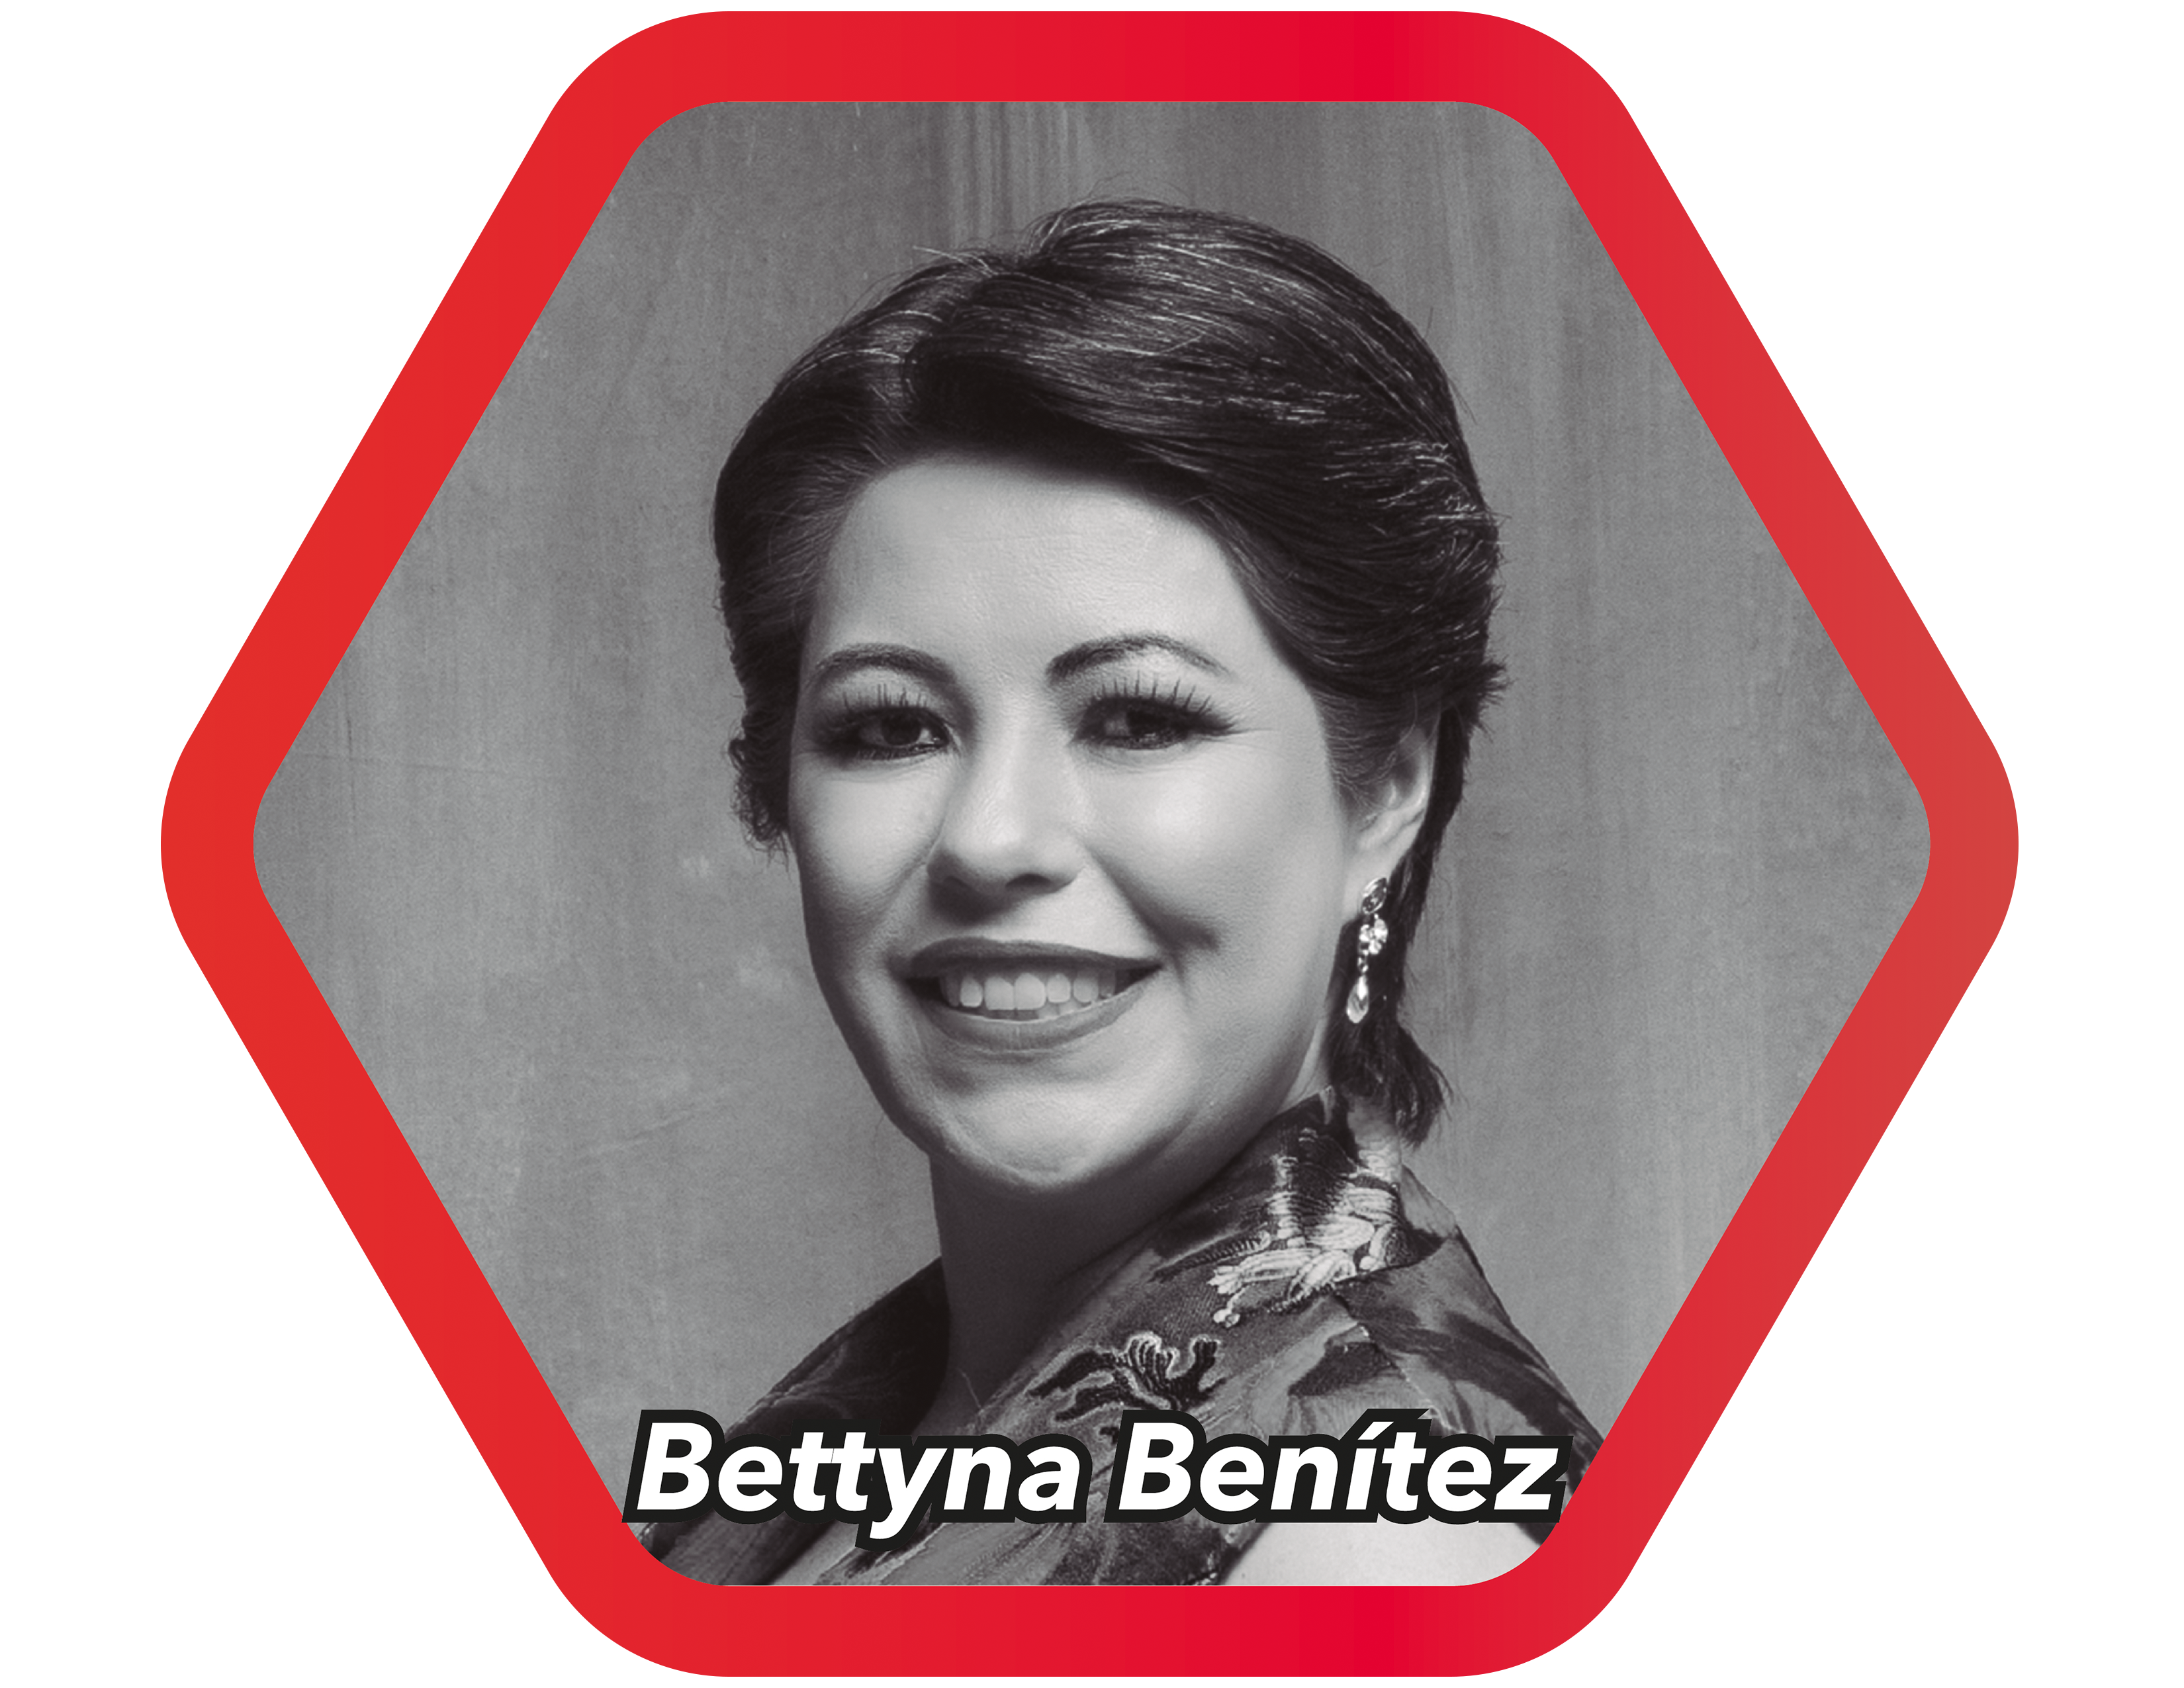 Bettyna Benítez